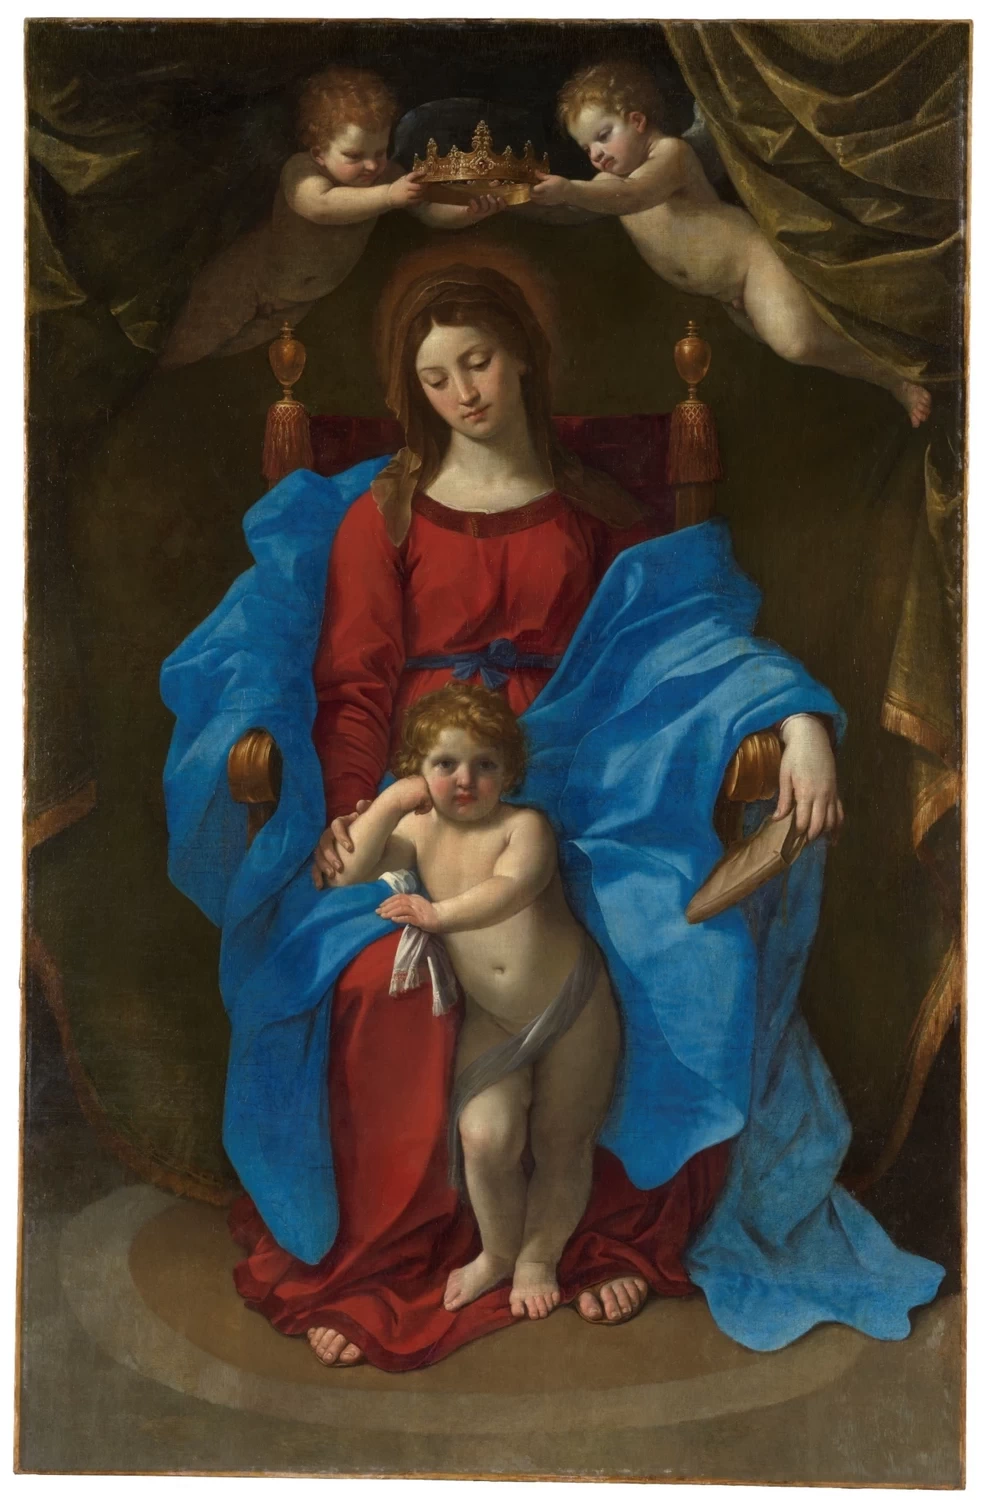  158-Madonna della Seggiola-Museo del Prado, Madrid